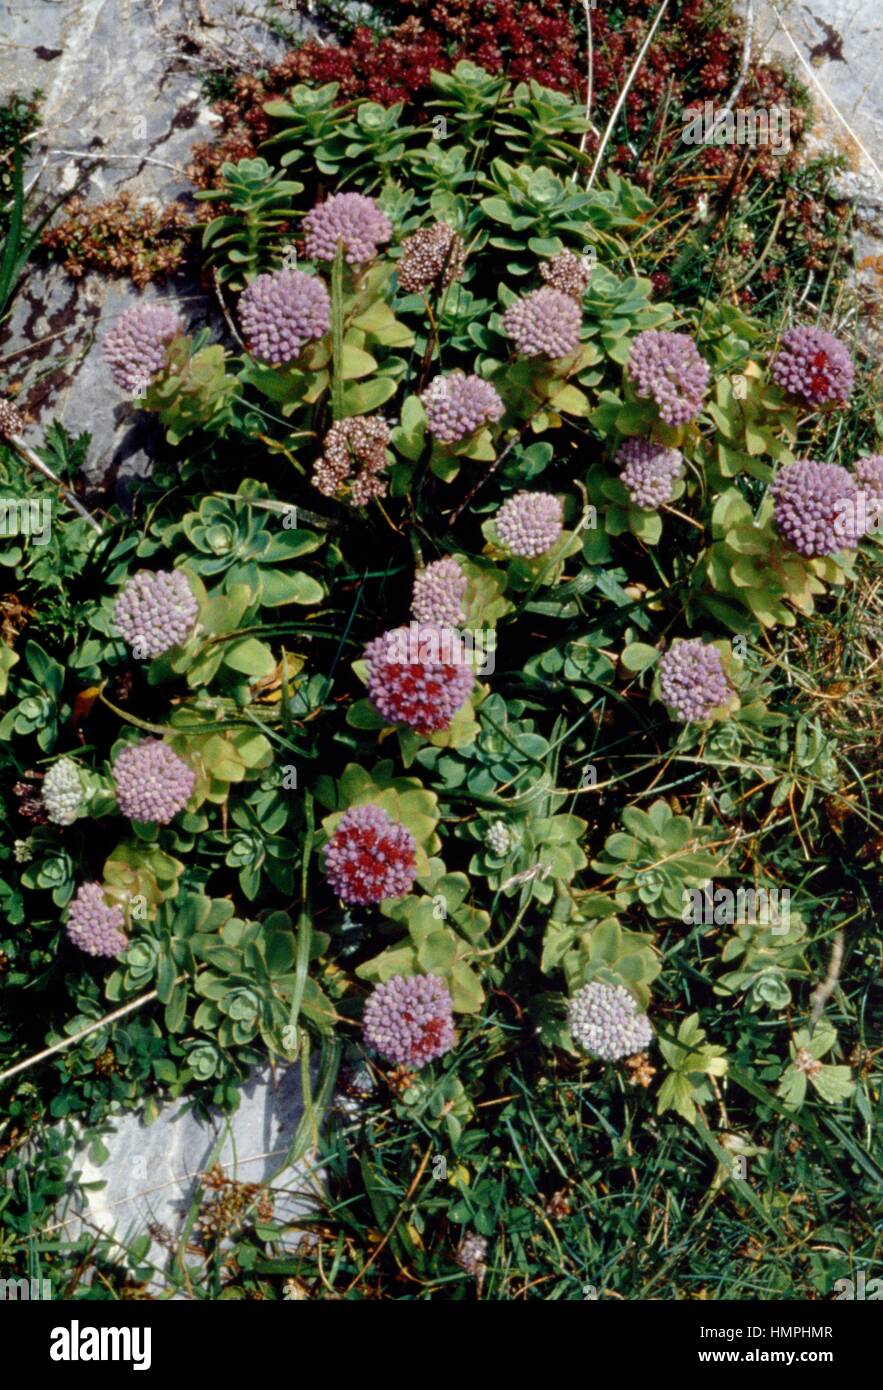 Love-restorer (Sedum anacampseros or Hylotelephium anacampseros), Crassulaceae. Stock Photo